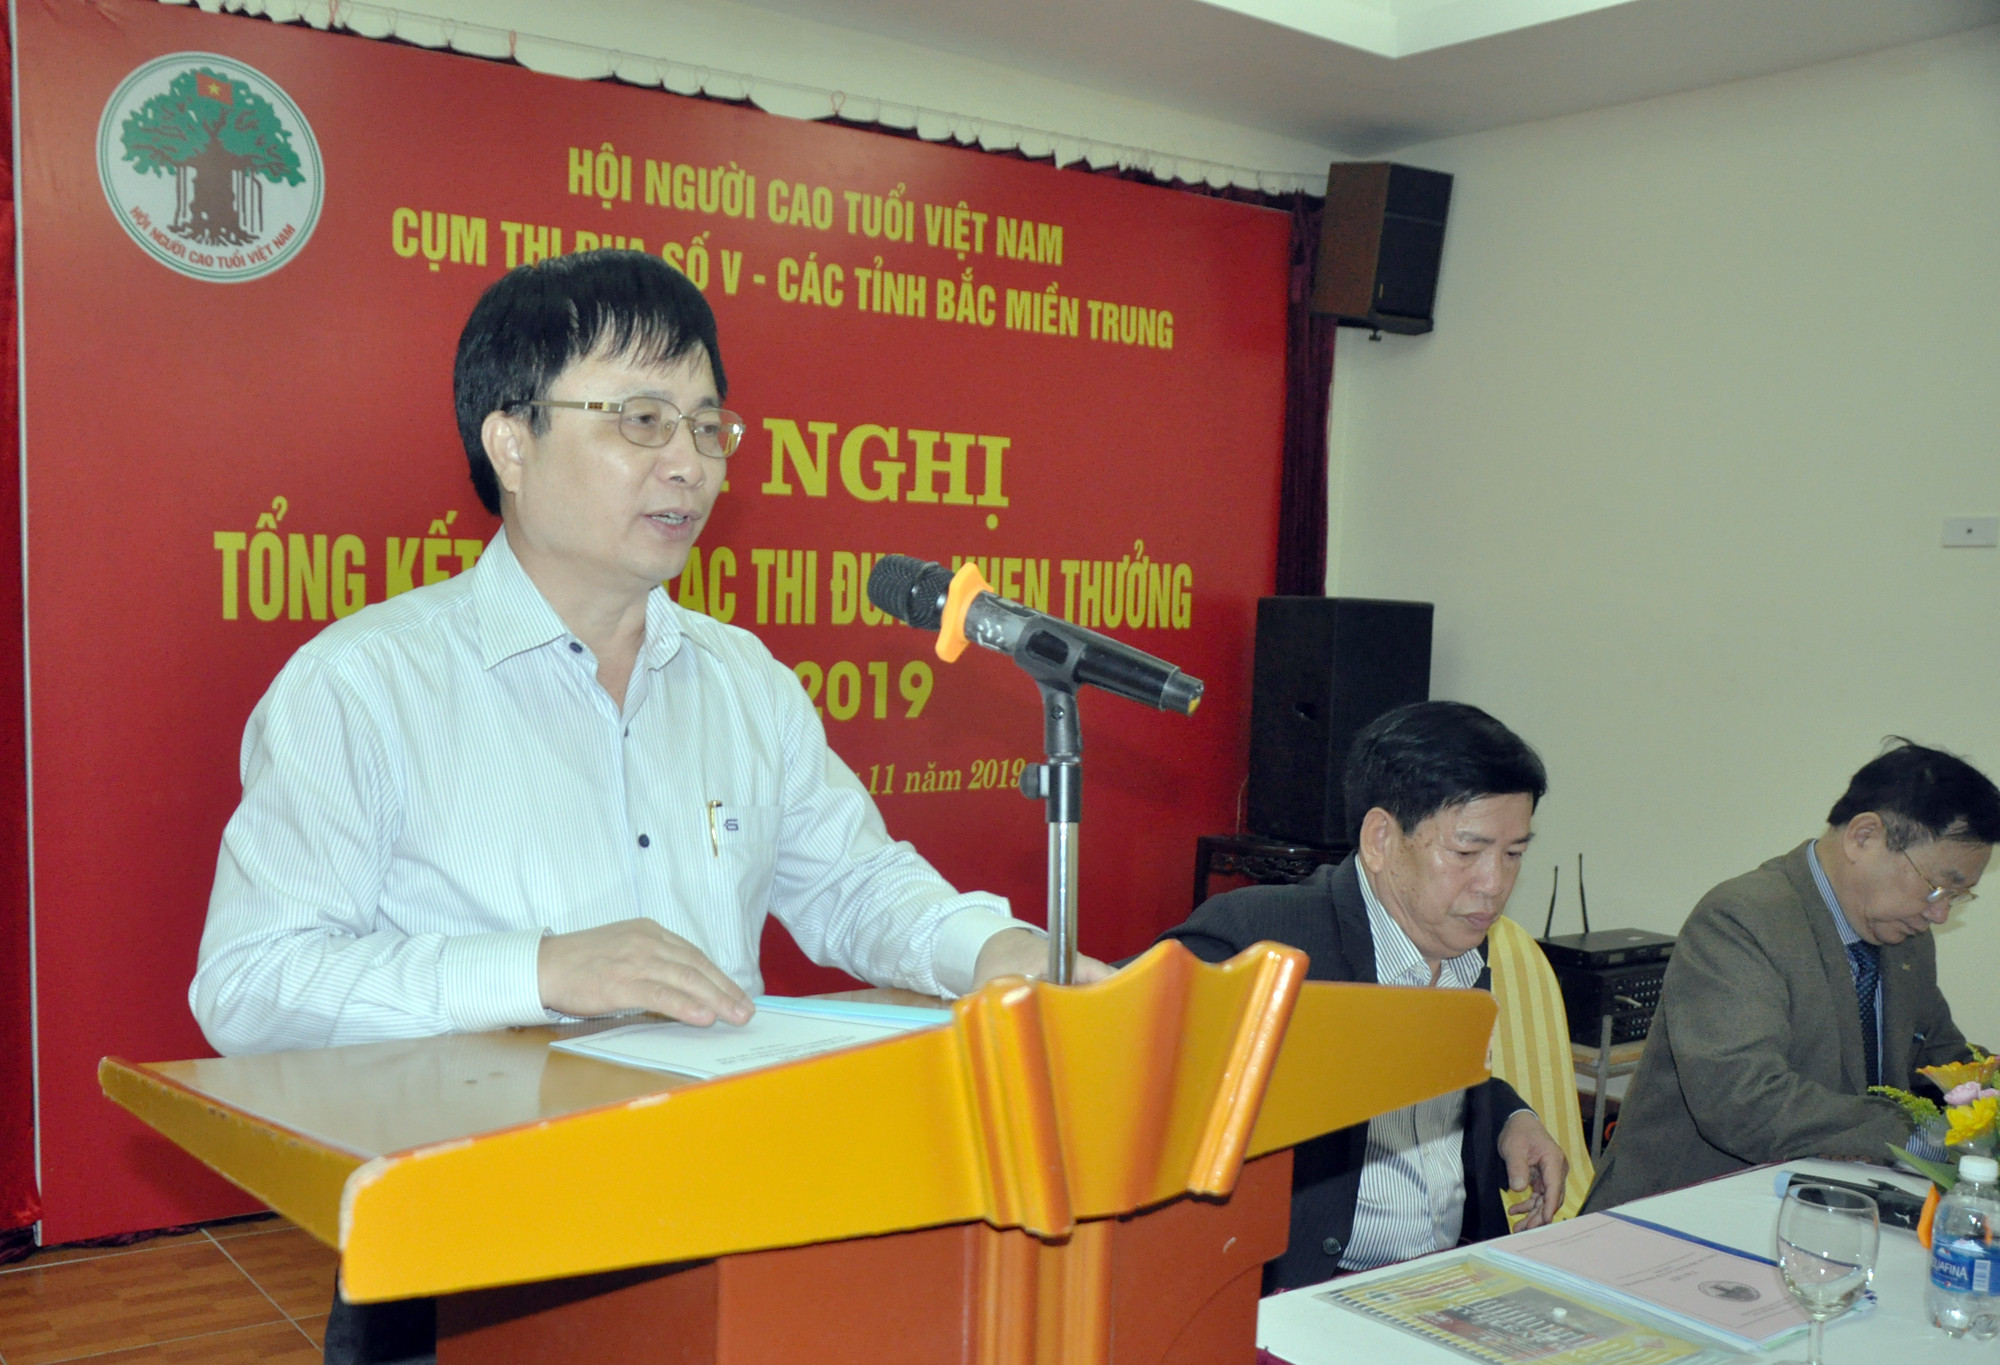 Đồng chí Bùi Đình Long - Phó Chủ tịch UBND tỉnh Nghệ An phát biểu chào mừng Hội nghị. Ảnh: CK